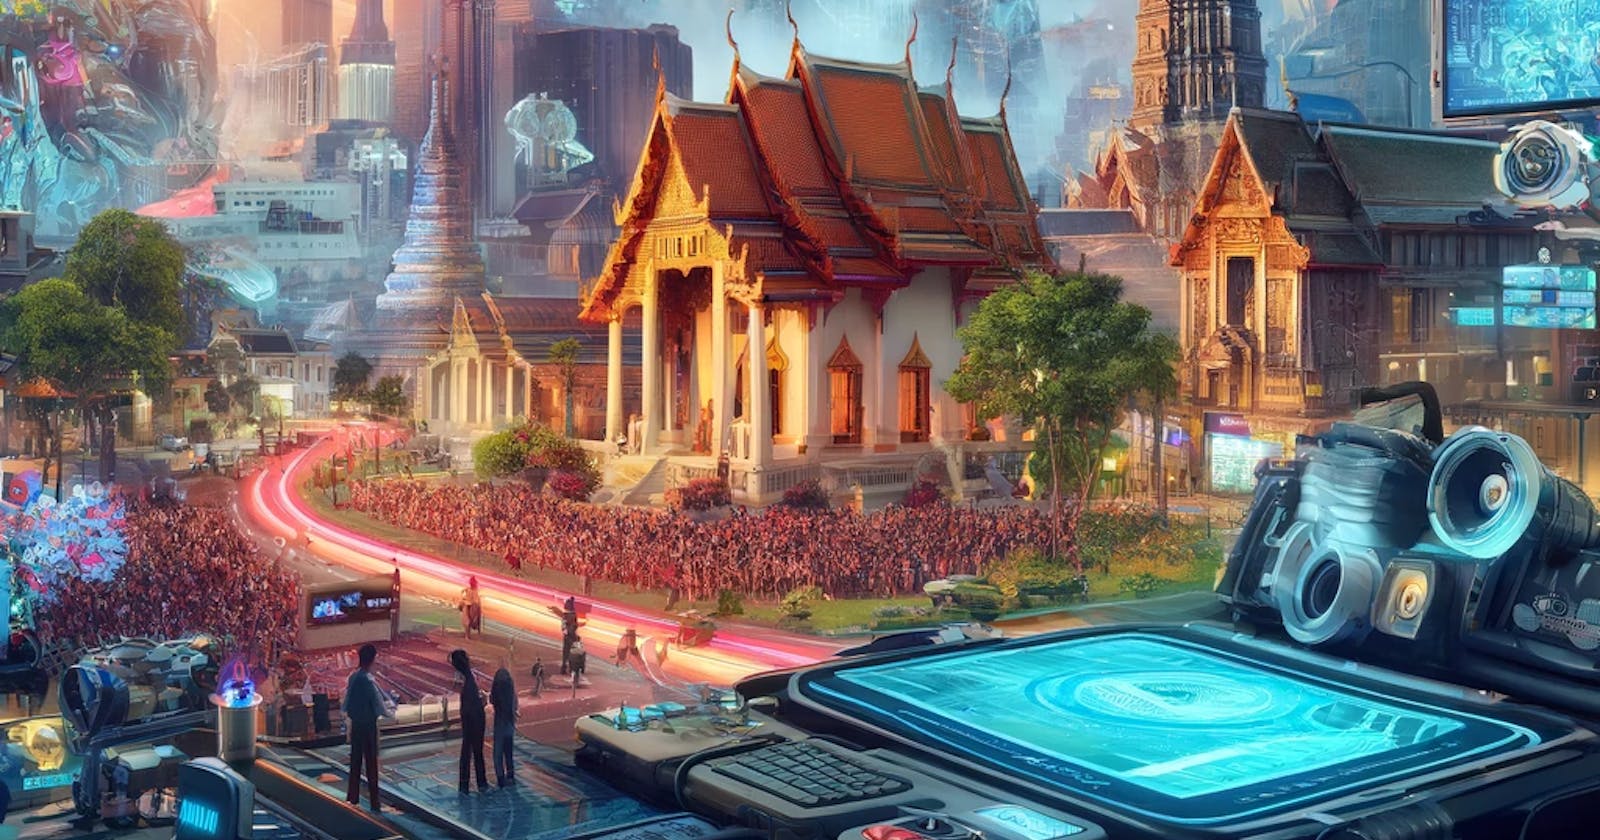 อนาคตของภาพยนตร์ไทย: แนวโน้มและทิศทางใหม่